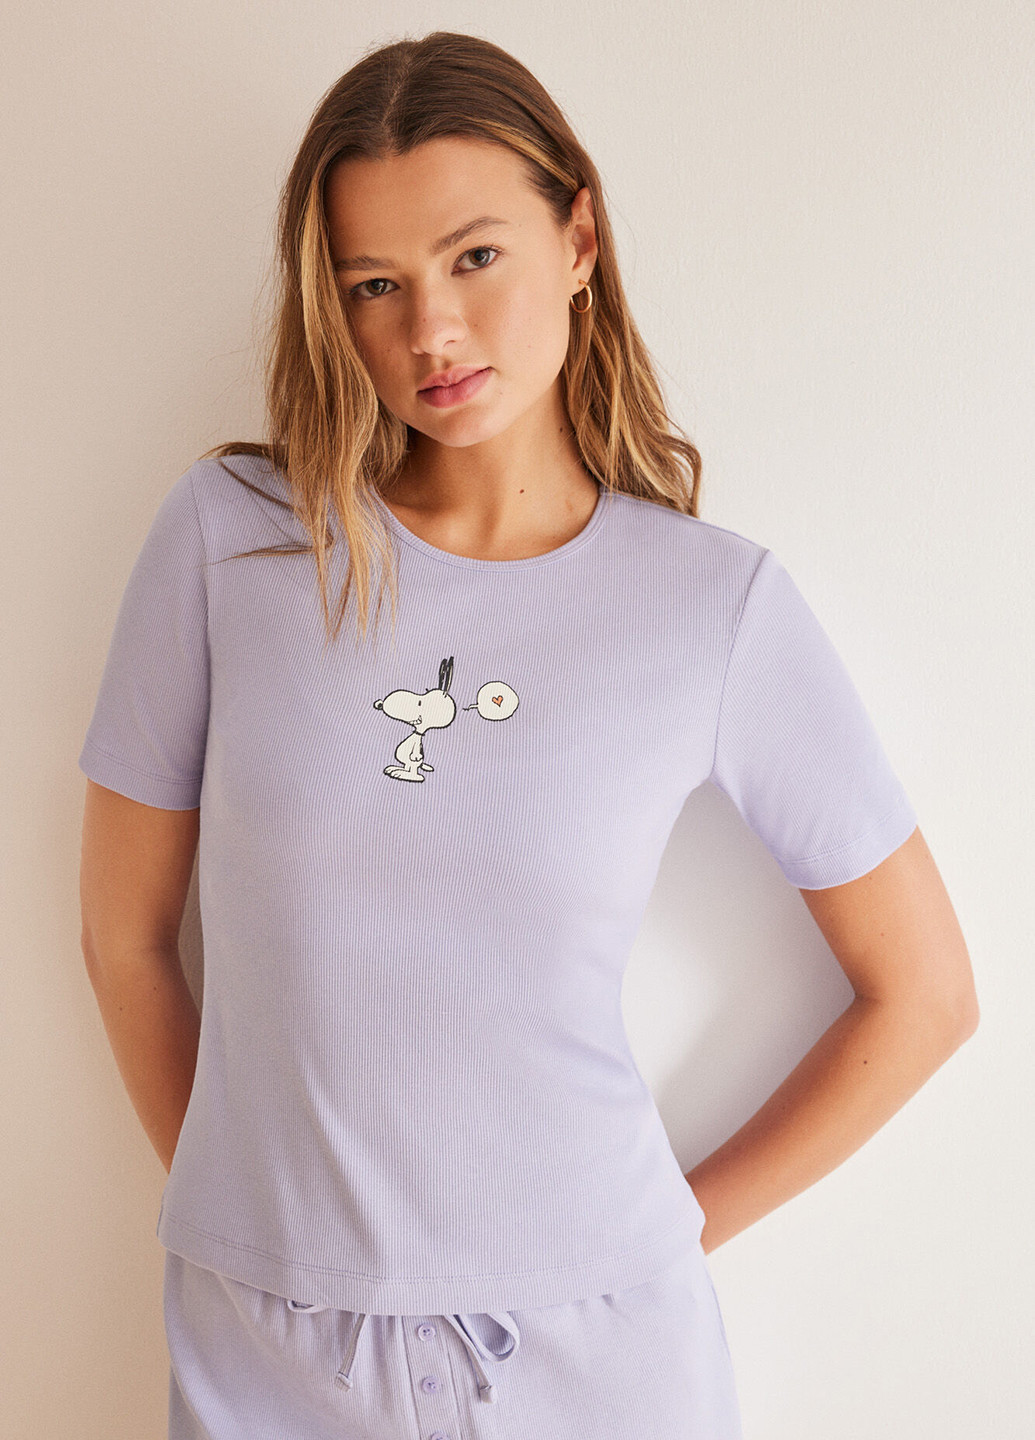 Сиреневая всесезон пижама (футболка, шорты) футболка + шорты Women'secret